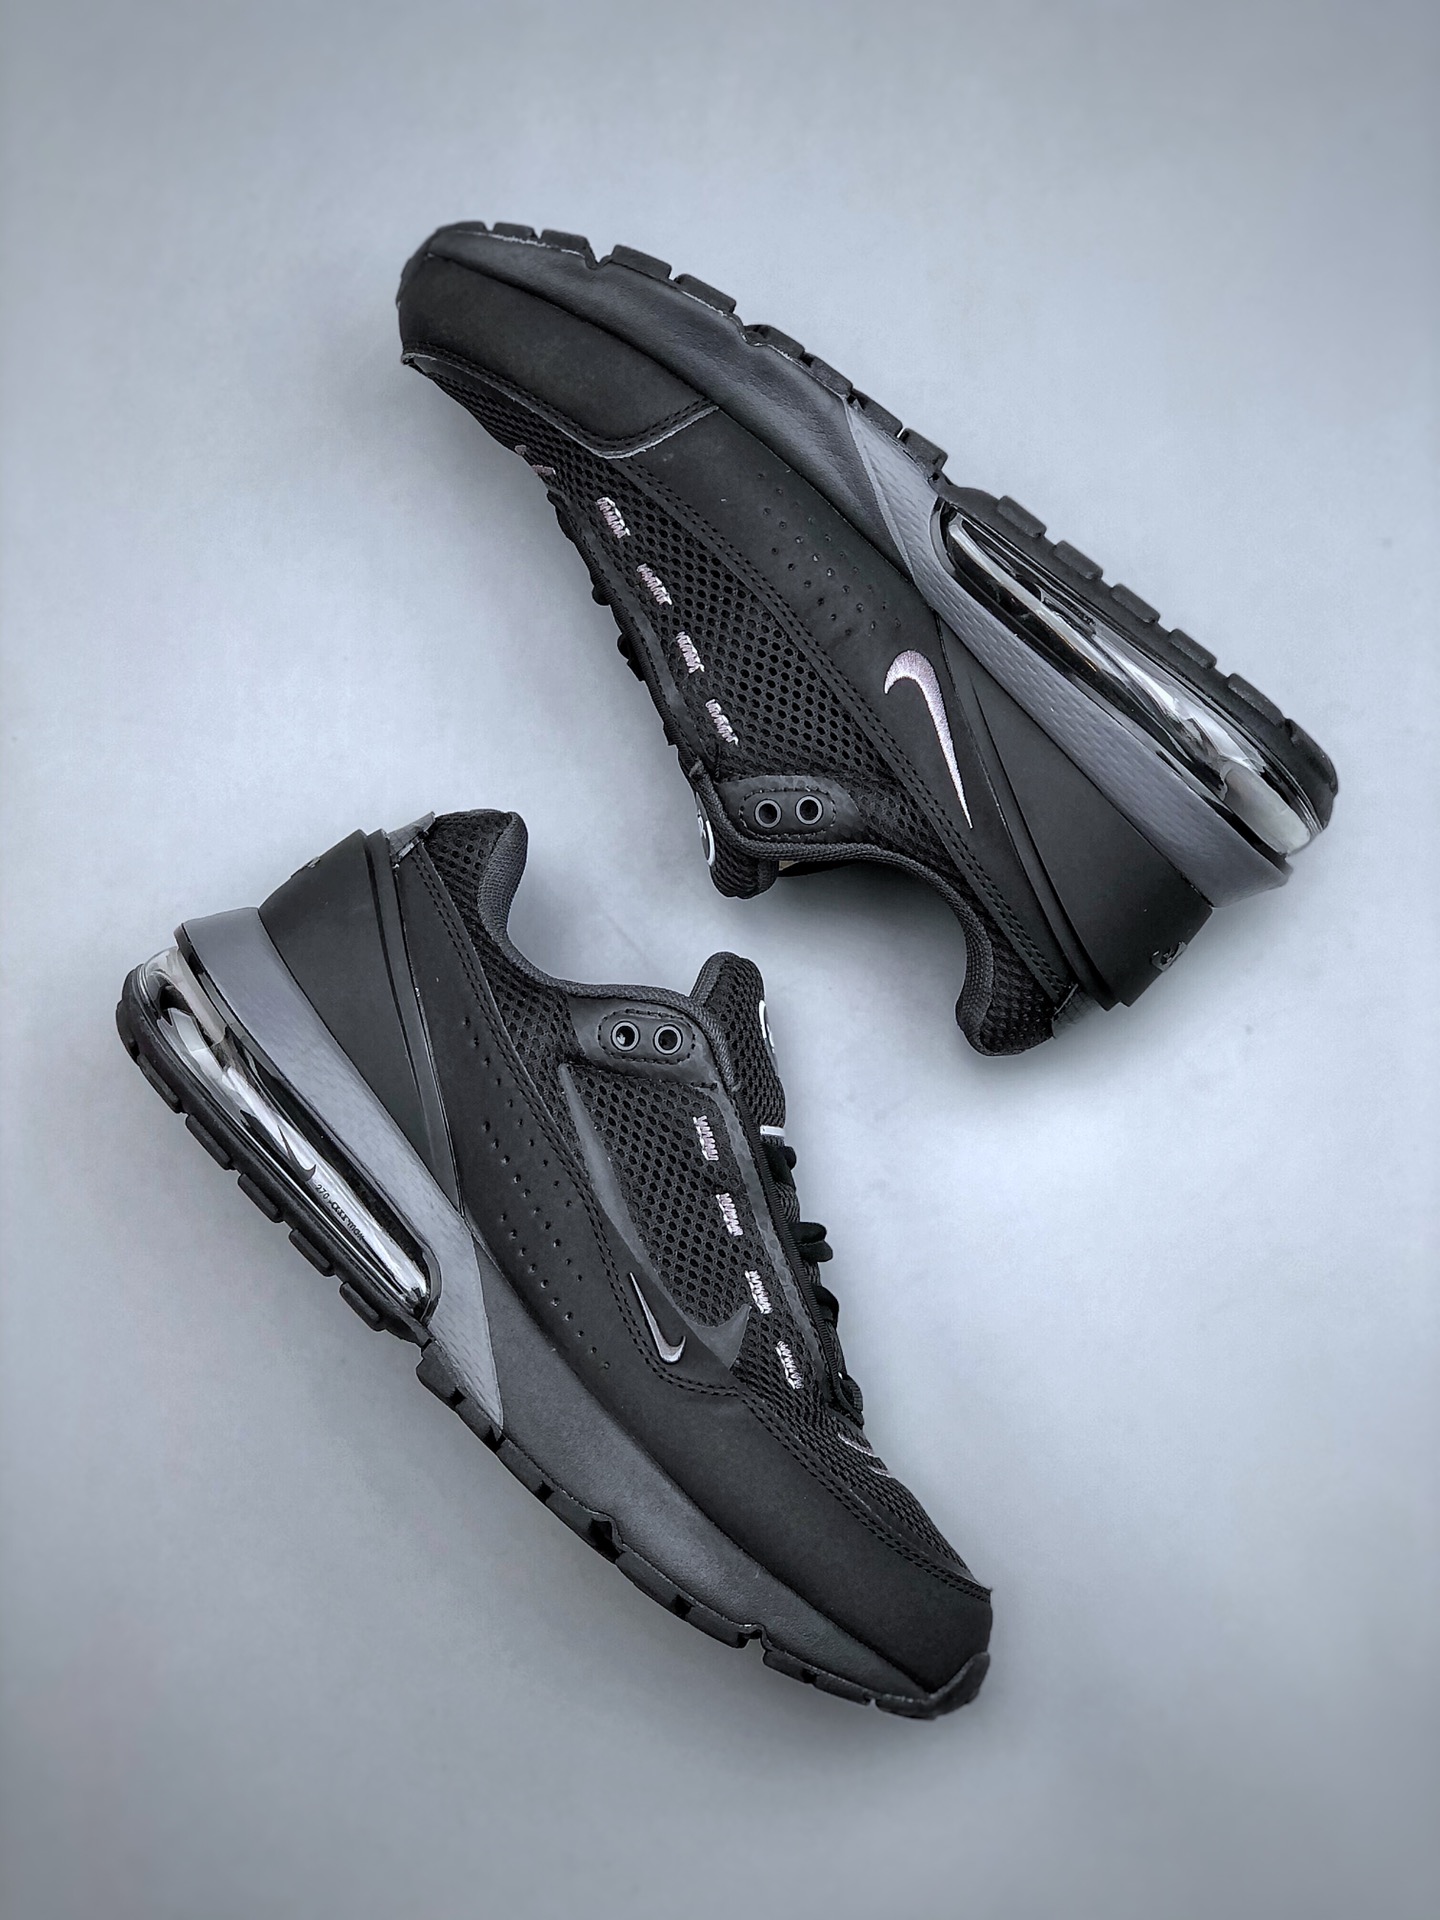 休闲鞋, Nike Air Max Pulse"Black Anthracite”, DR0453 003 - 耐克 Nike Air Max Pulse"Black Anthracite” 减震防滑 低帮 运动休闲鞋 男款 黑 DR0453 003